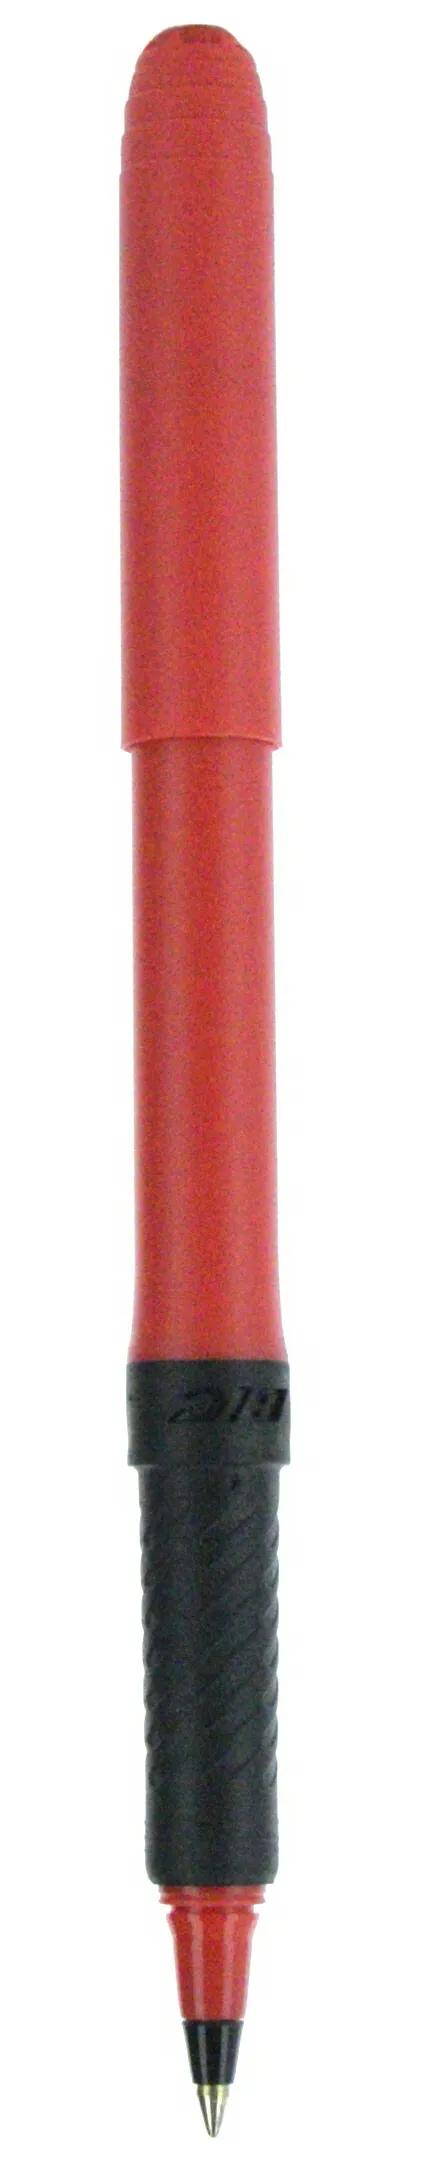 BIC® Grip Roller Pen 132 of 147